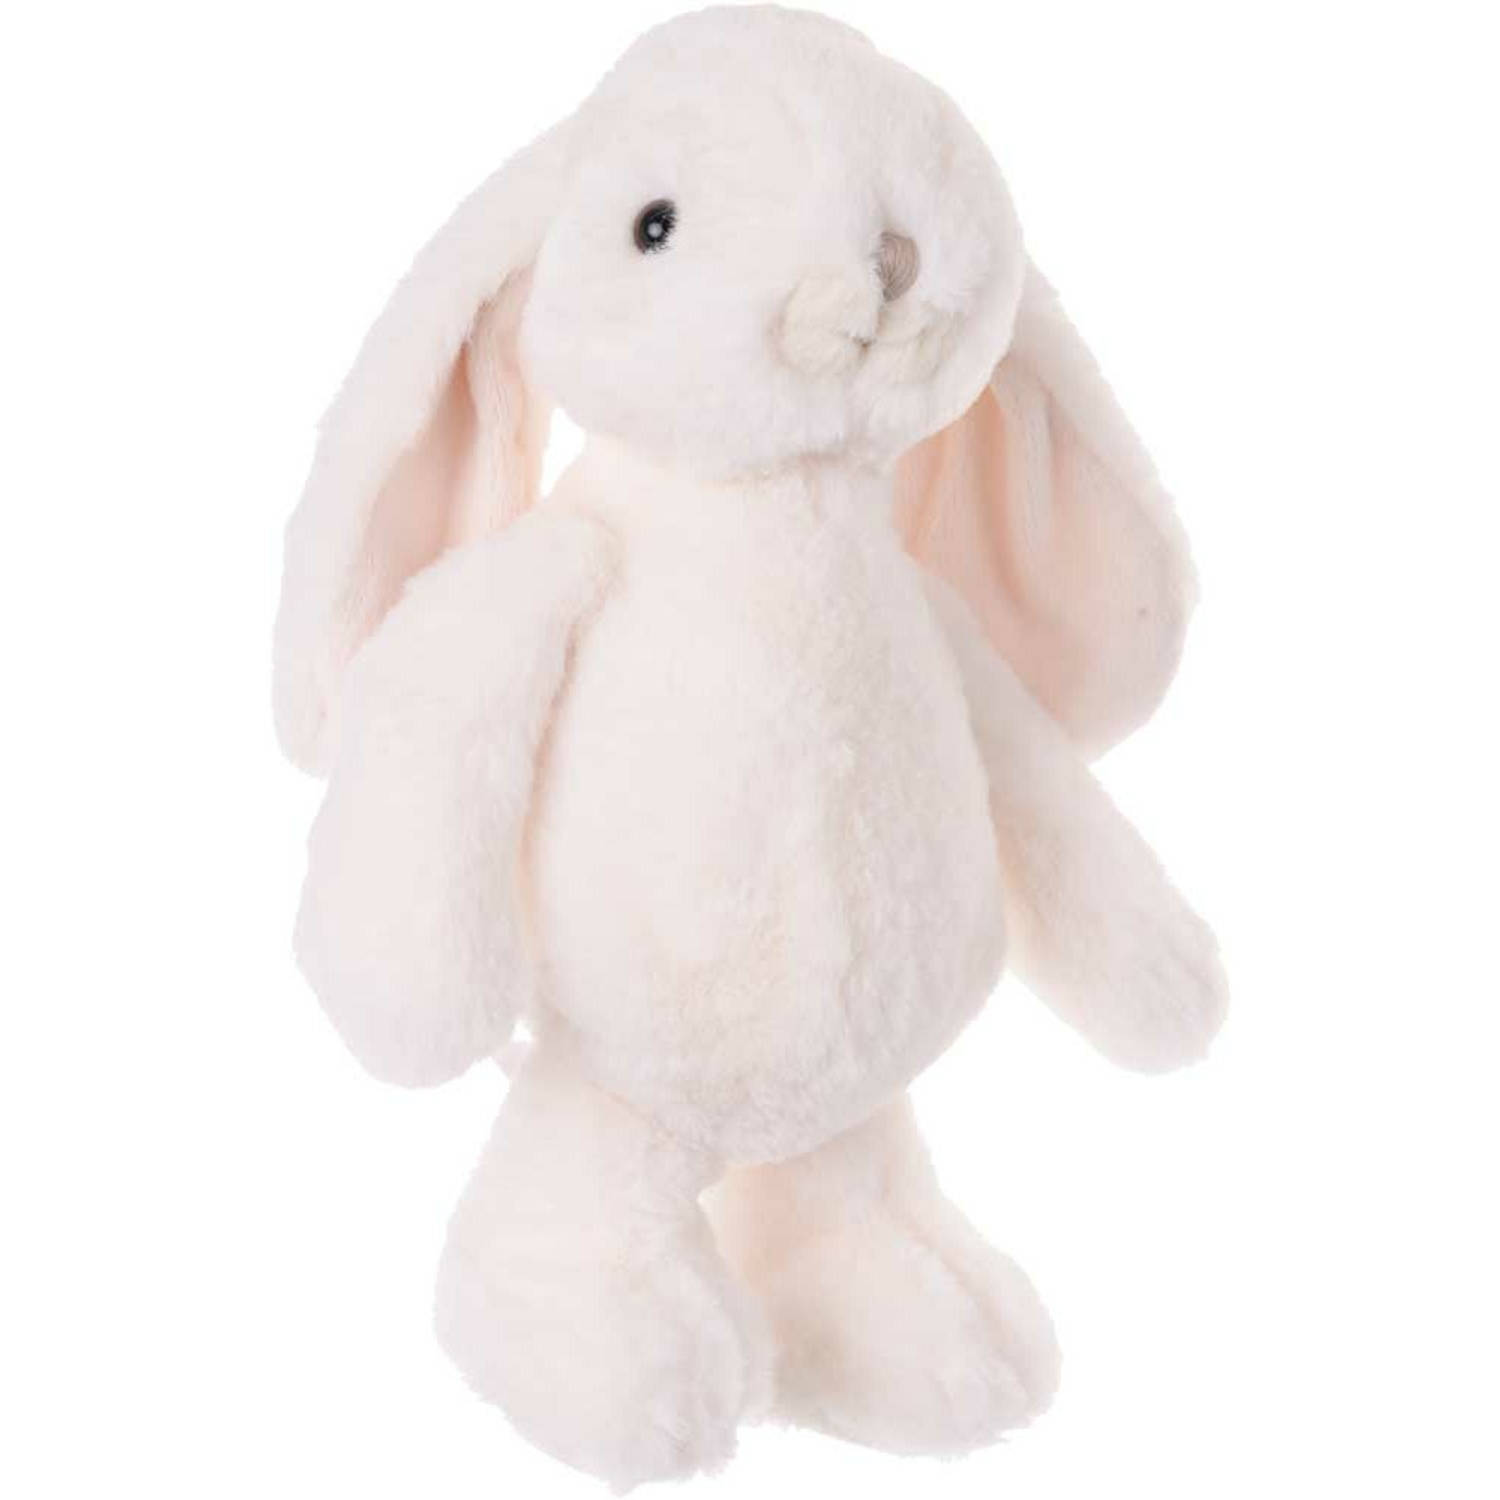 Bukowski pluche konijn knuffeldier - wit - staand - 25 cm - Luxe kwaliteit knuffels